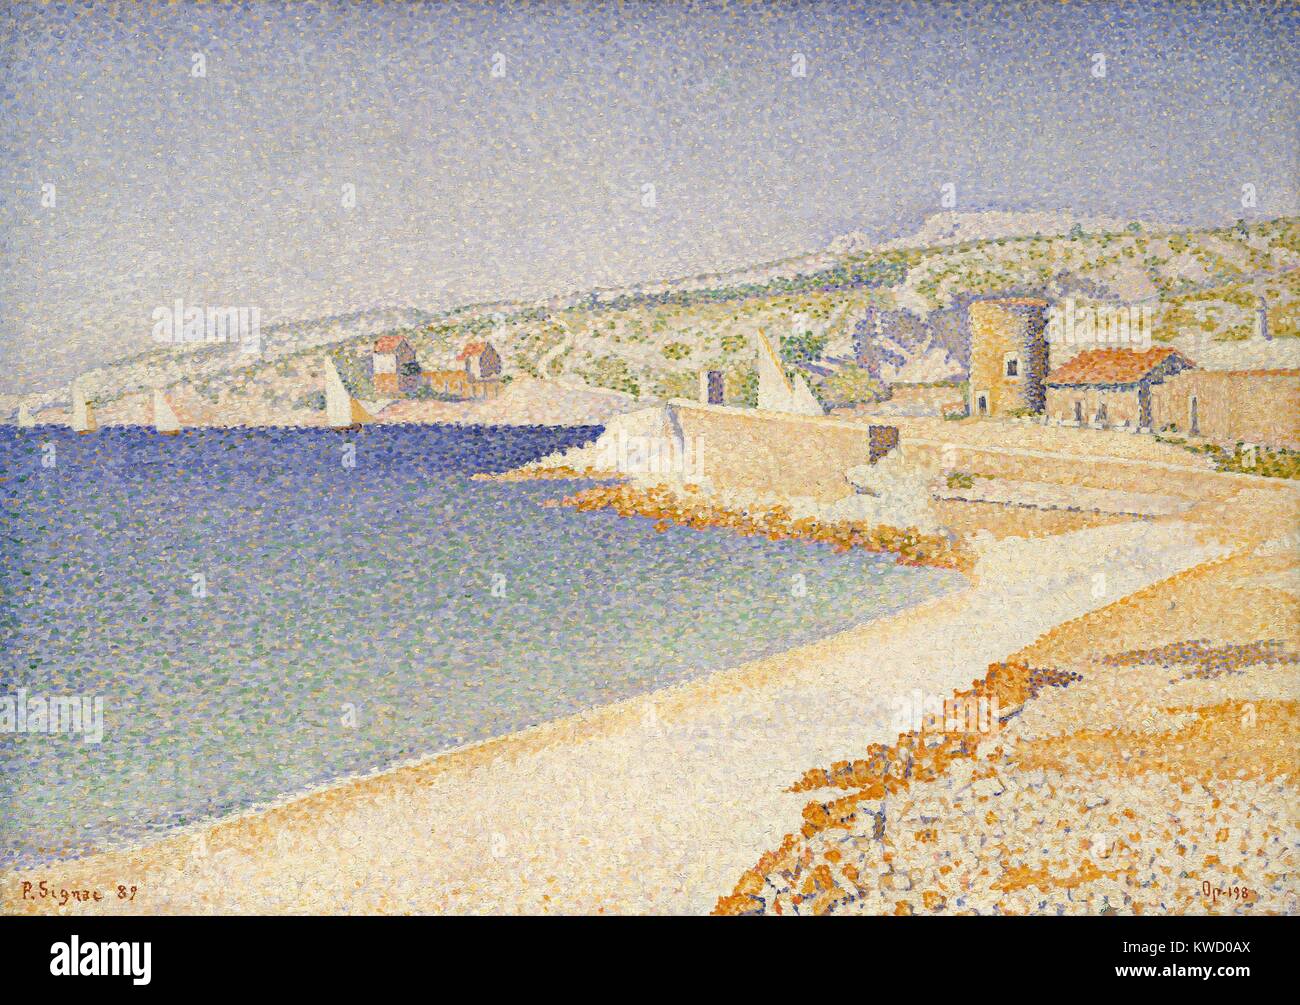 La Jetée de Cassis, Opus 198, par Paul Signac, 1889, le français postimpressionnistes, huile sur toile. Cette peinture de la Méditerranée port a été l'objet d'éloges quand la série a été exposée au Salon des Indépendants en 1889. Signac a décrit son BSLOC exp (2017 5 89) Banque D'Images